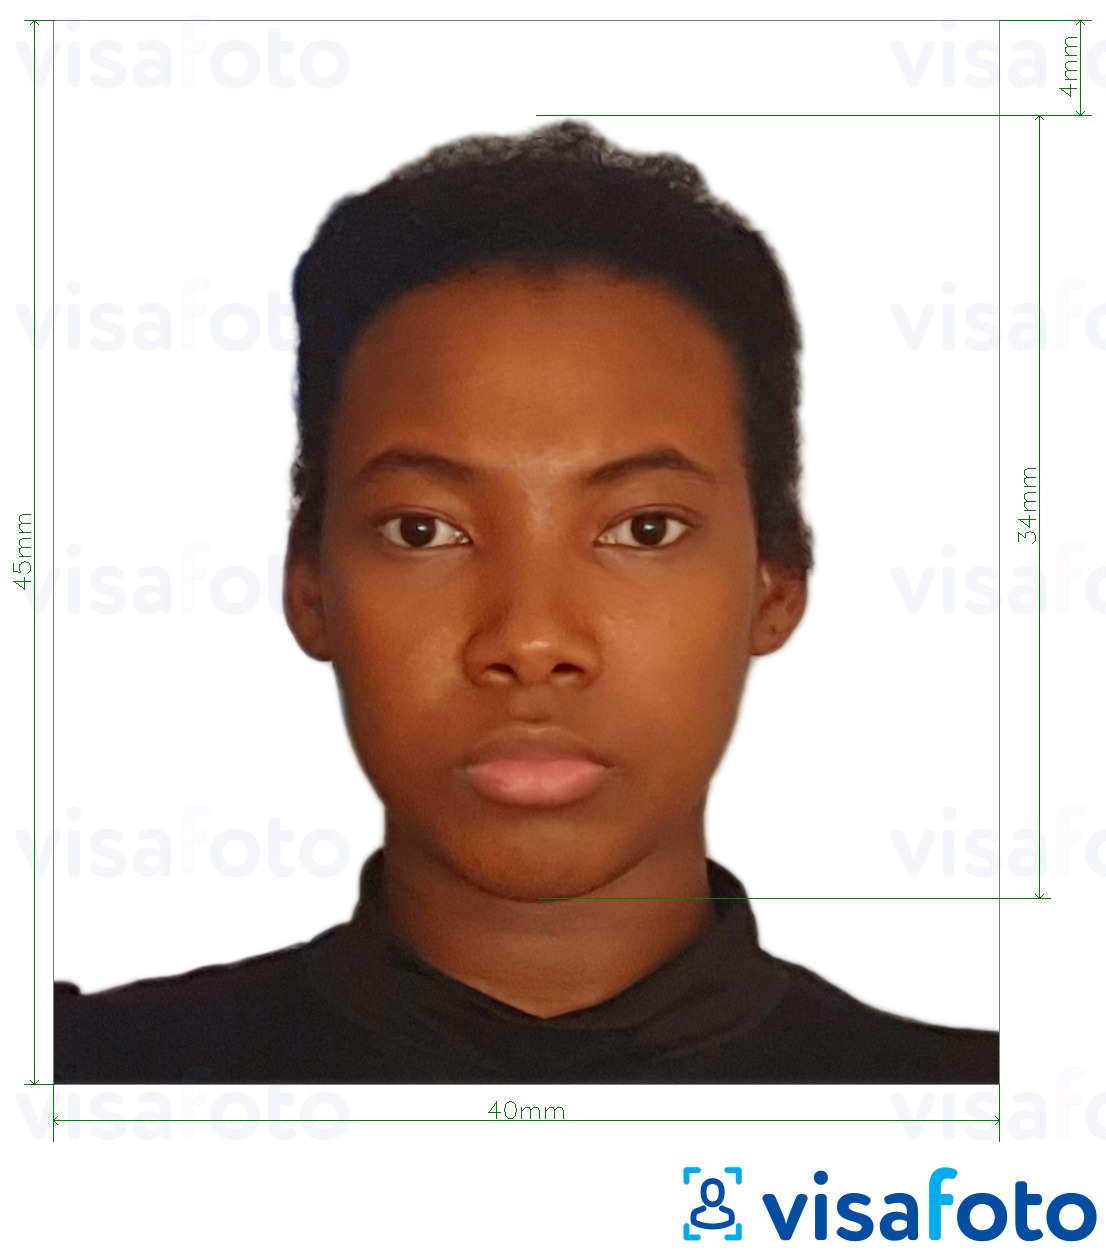 Contoh foto untuk Pasport Tanzania 40x45 mm (4x4.5 cm) dengan spesifikasi saiz yang tepat.